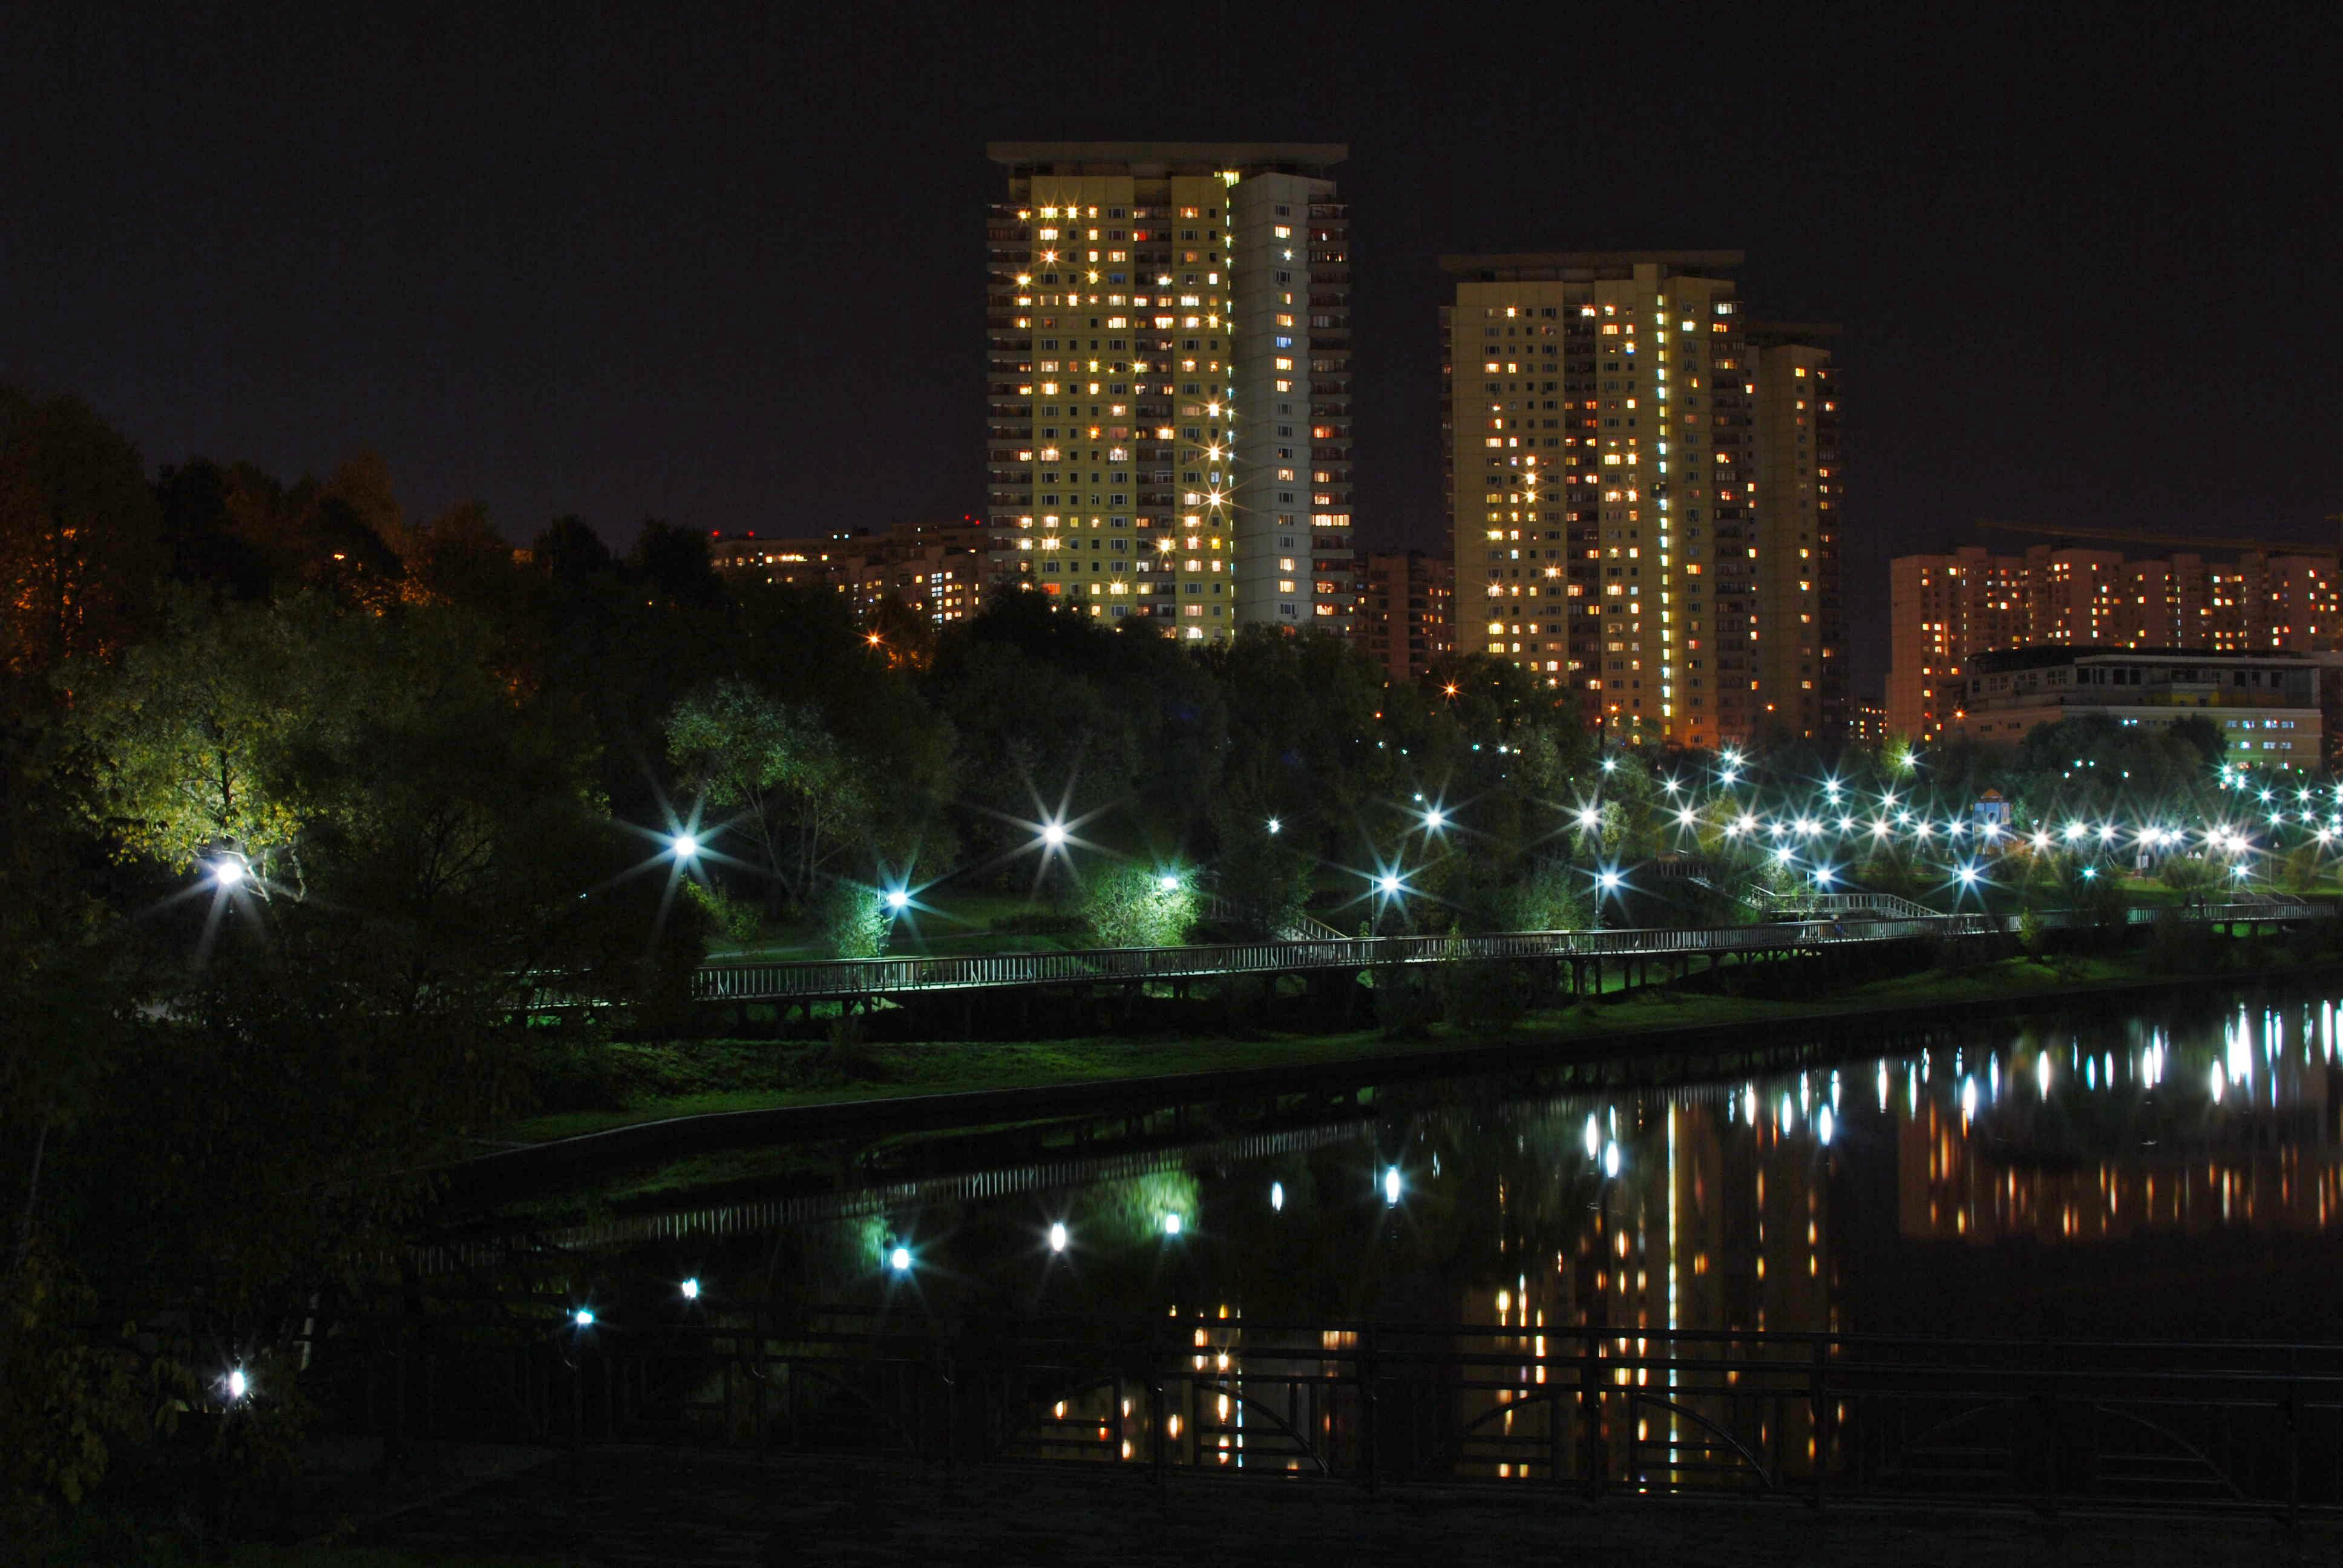 Вечер 4 3 24. Тропарево-Никулино ночью. Парк Тропарево ночью. Парк олимпийской деревни в Москве ночью. Парк школьников тропарёво-Никулино ночью.